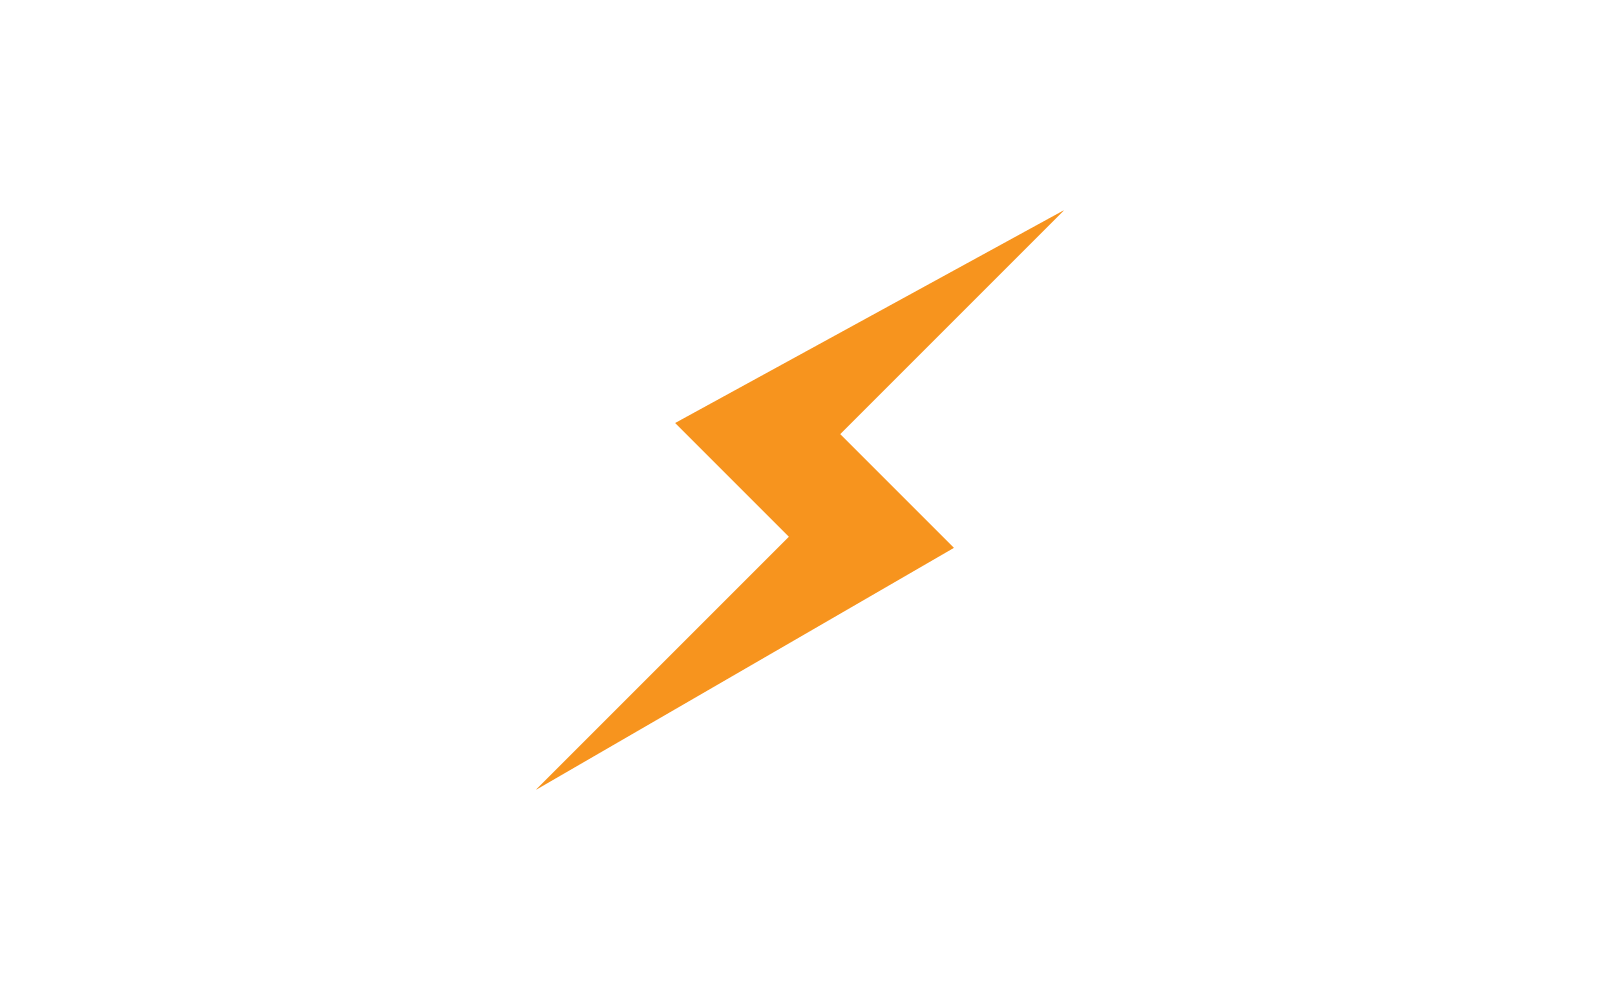 Power lightning power energy icon logo vector design